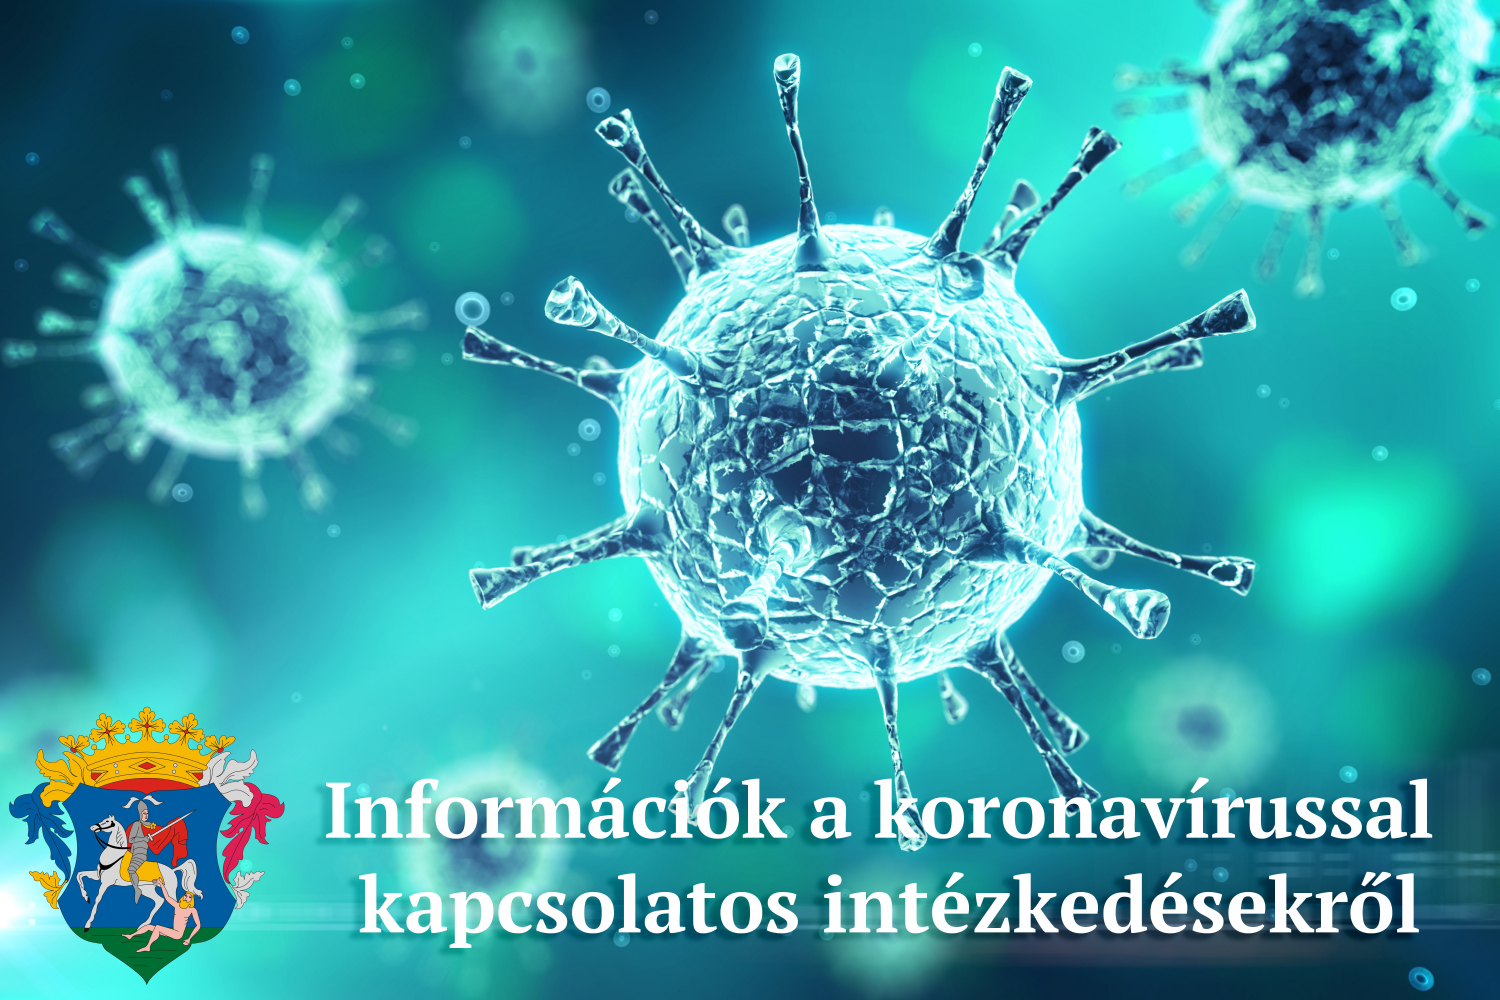 információk a koronavírussal kapcsolatos intézkedésekről, döntésekről 2021. február 22-26 között